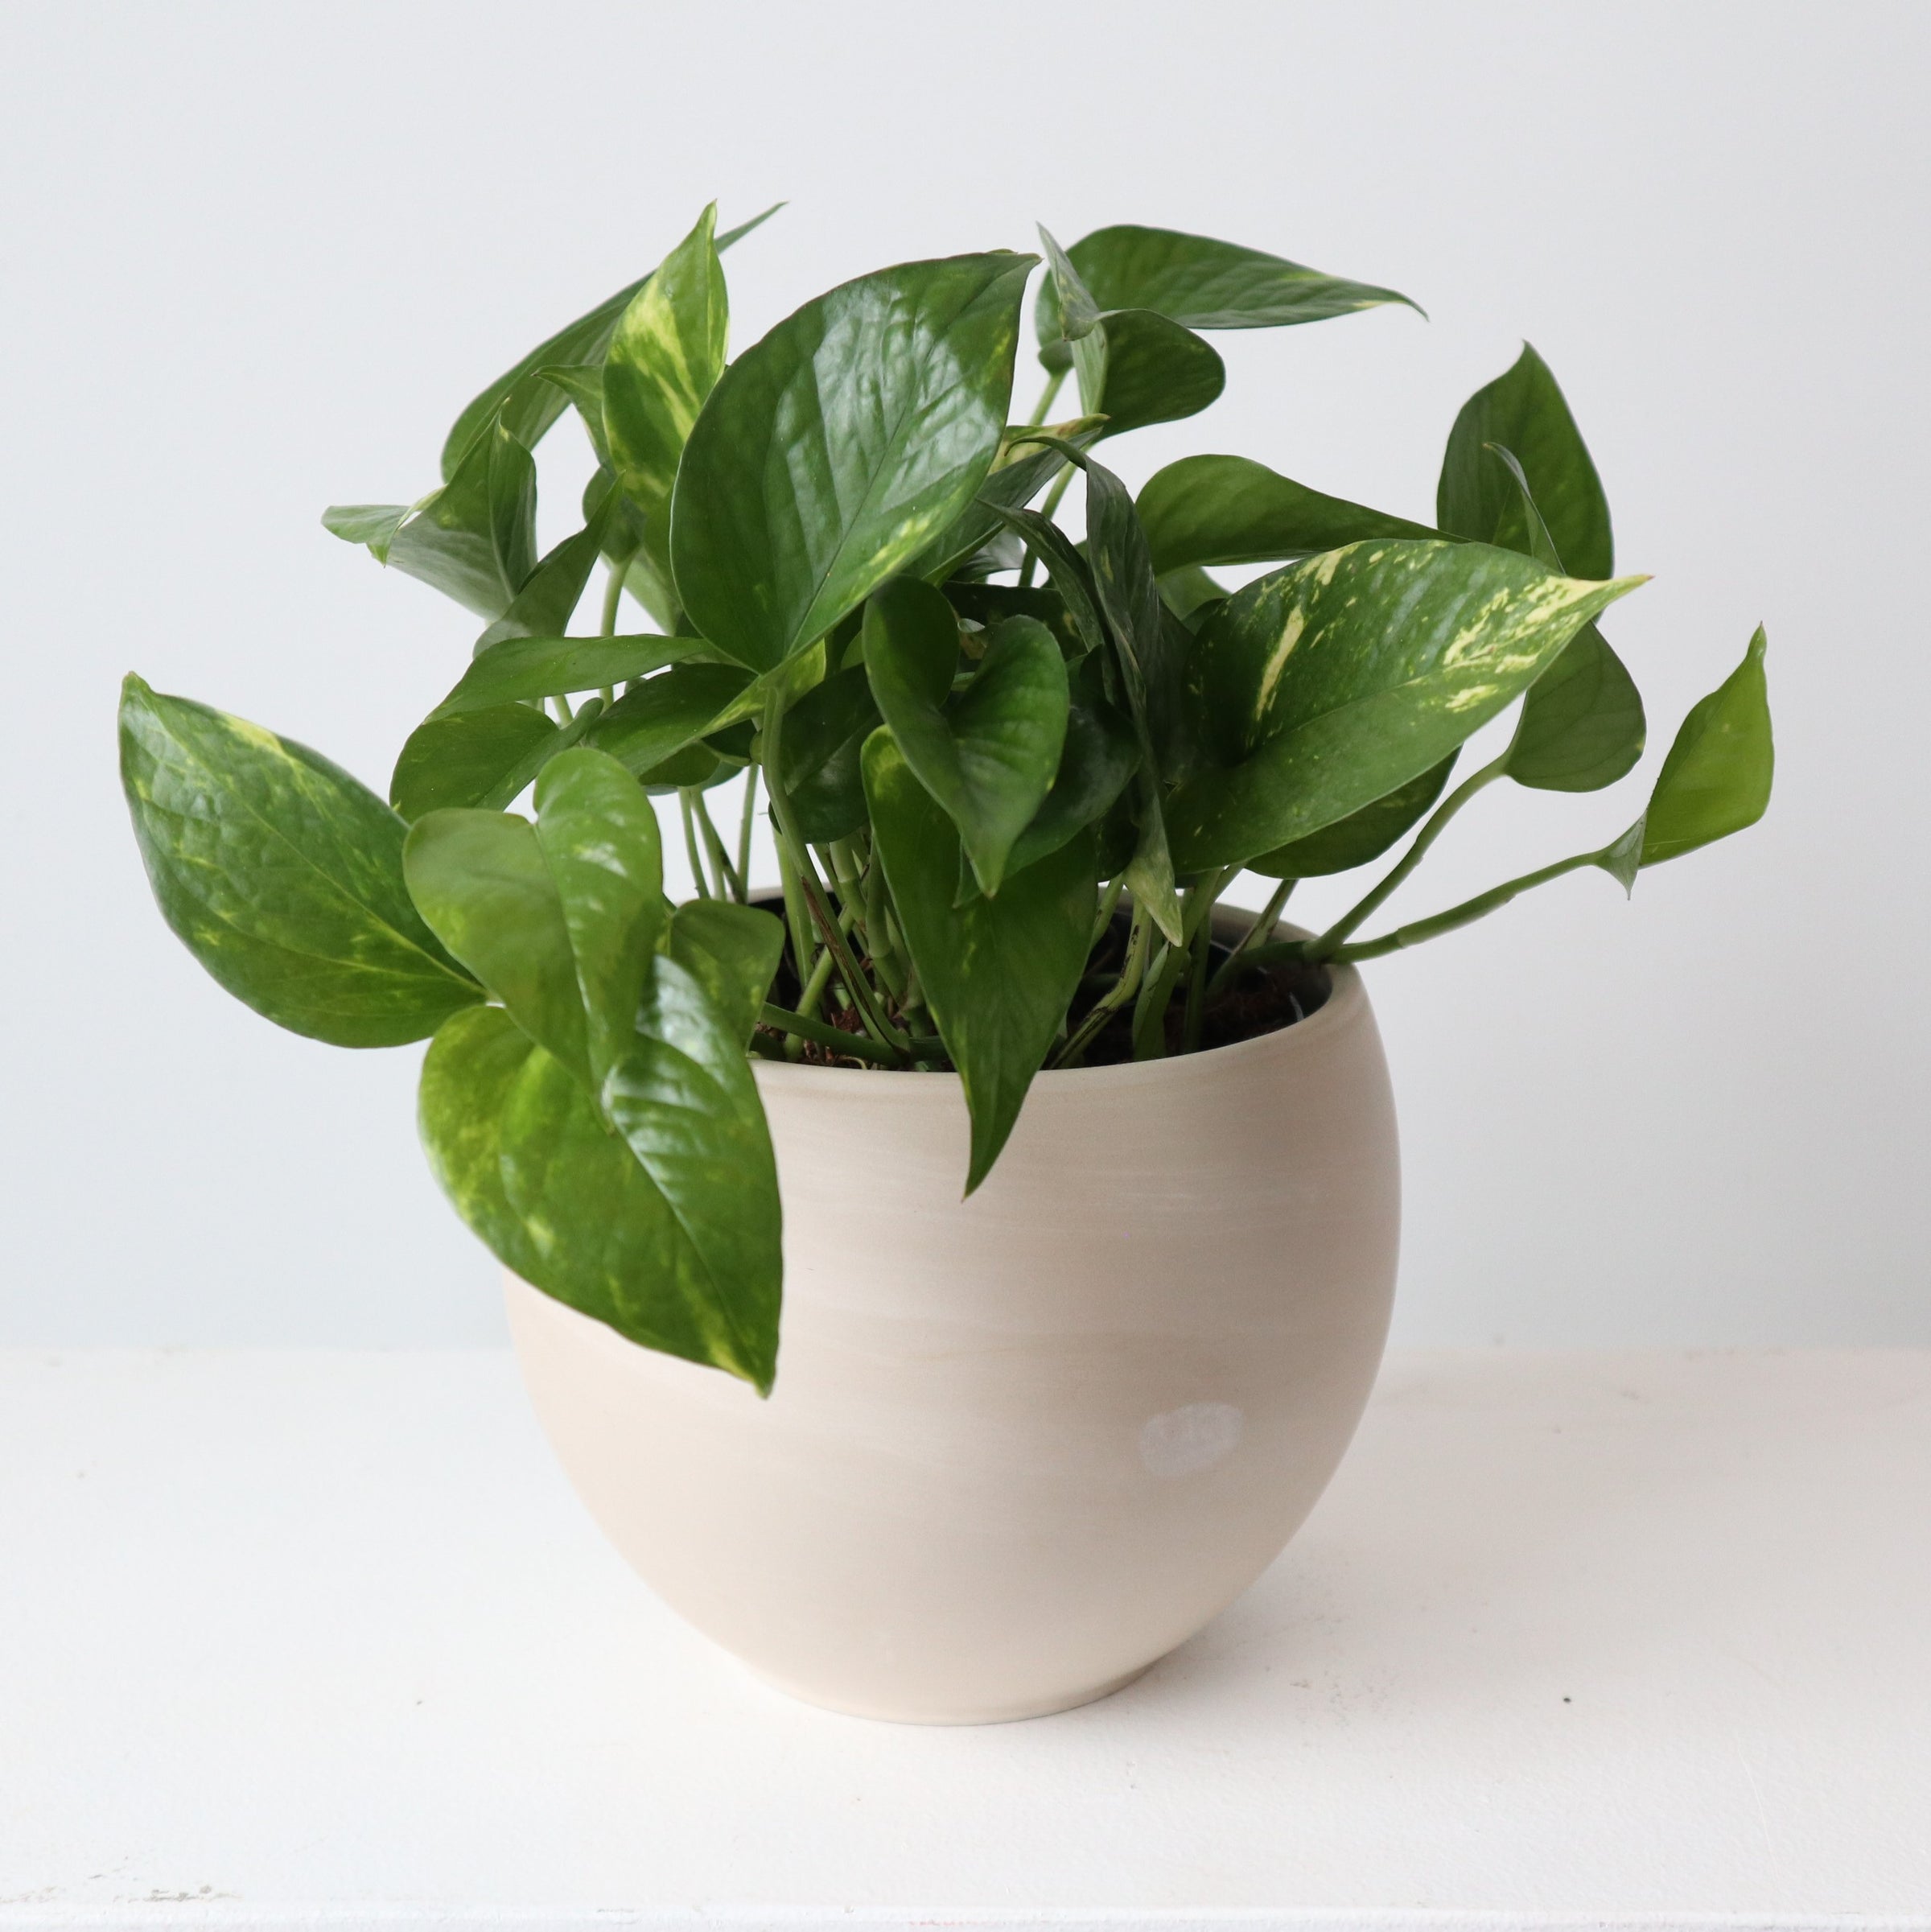 Pothos plant in ceramic pot